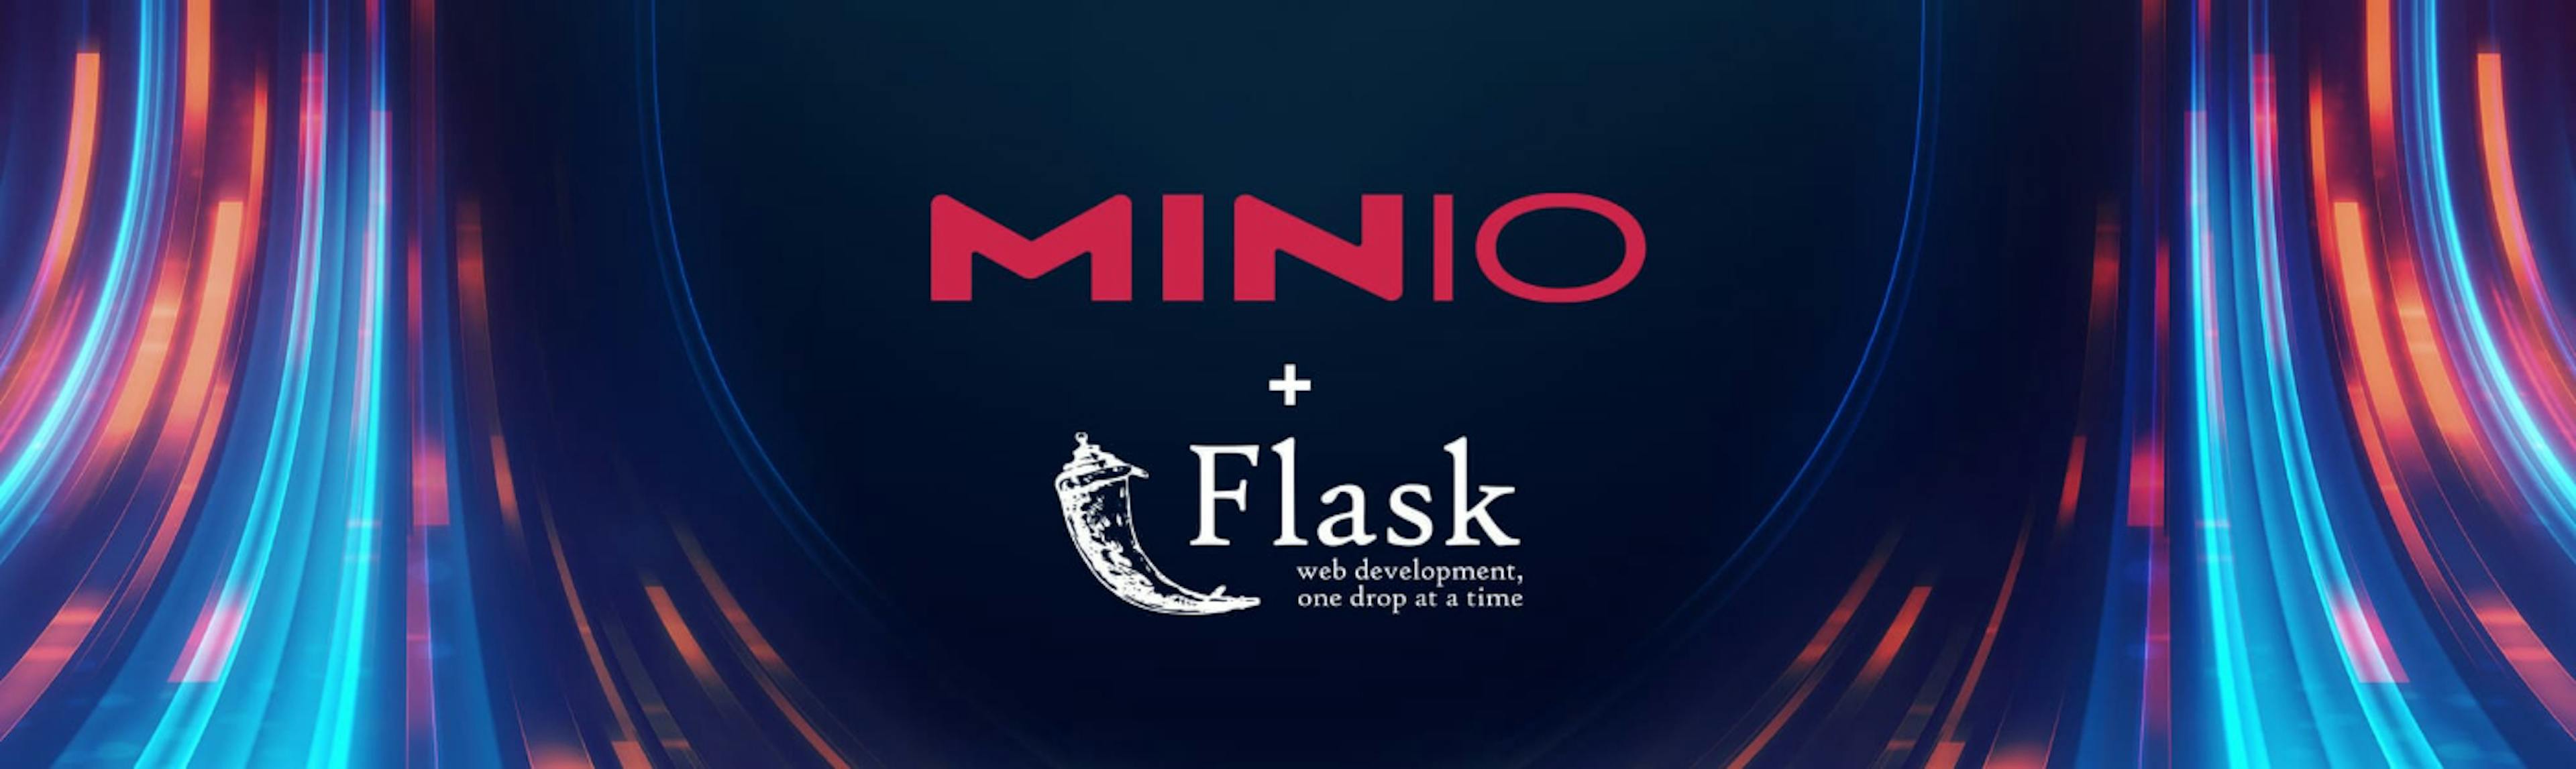 featured image - Utiliser MinIO et Python pour créer des applications événementielles évolutives et efficaces